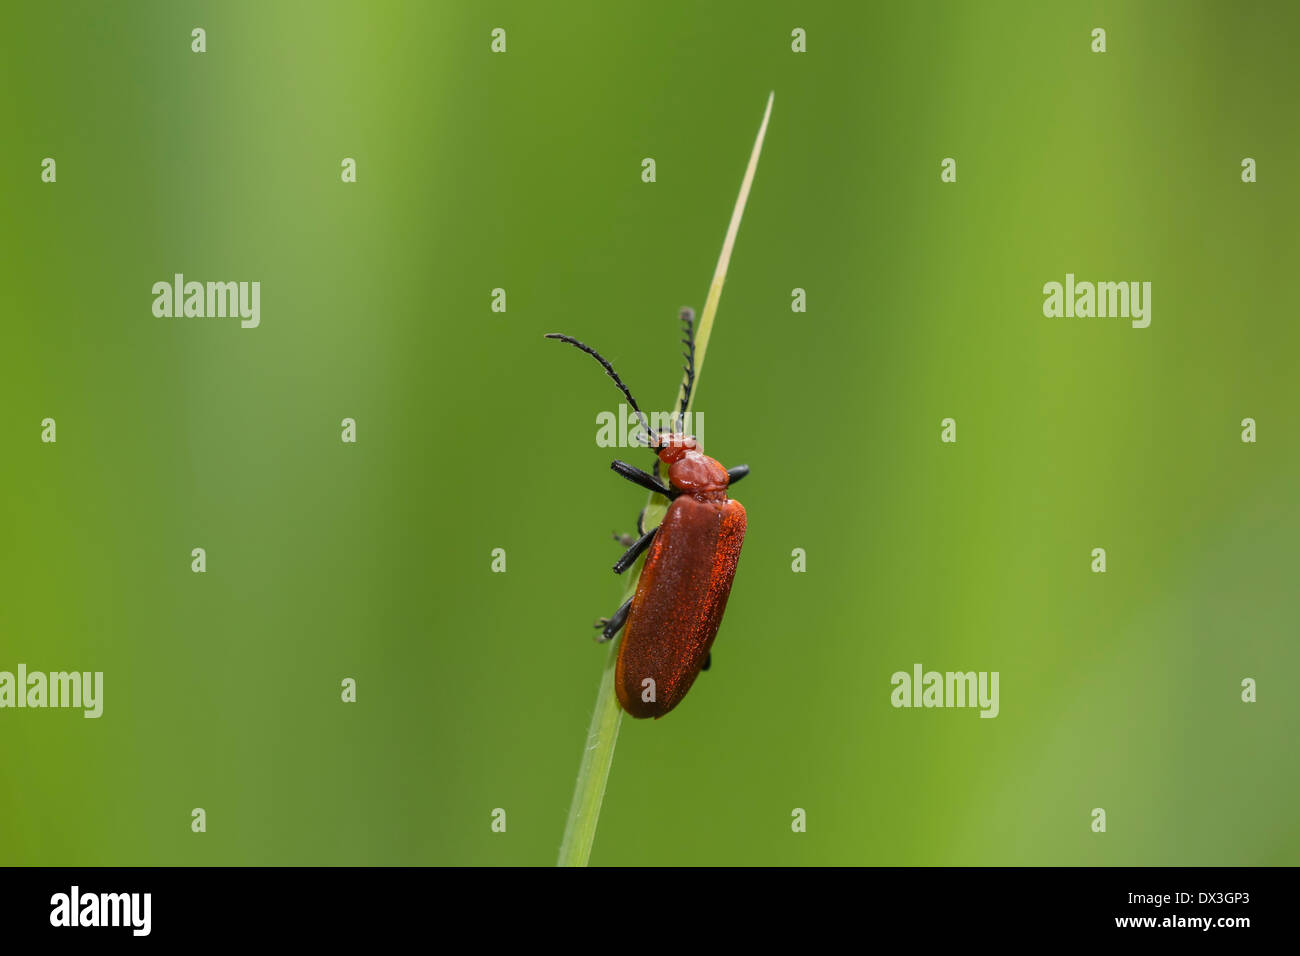 Comune soldato rosso beetle (Rhagonycha fulva) salendo reed. Bel contrasto tra il suo corpo rosso e verde sullo sfondo. Foto Stock